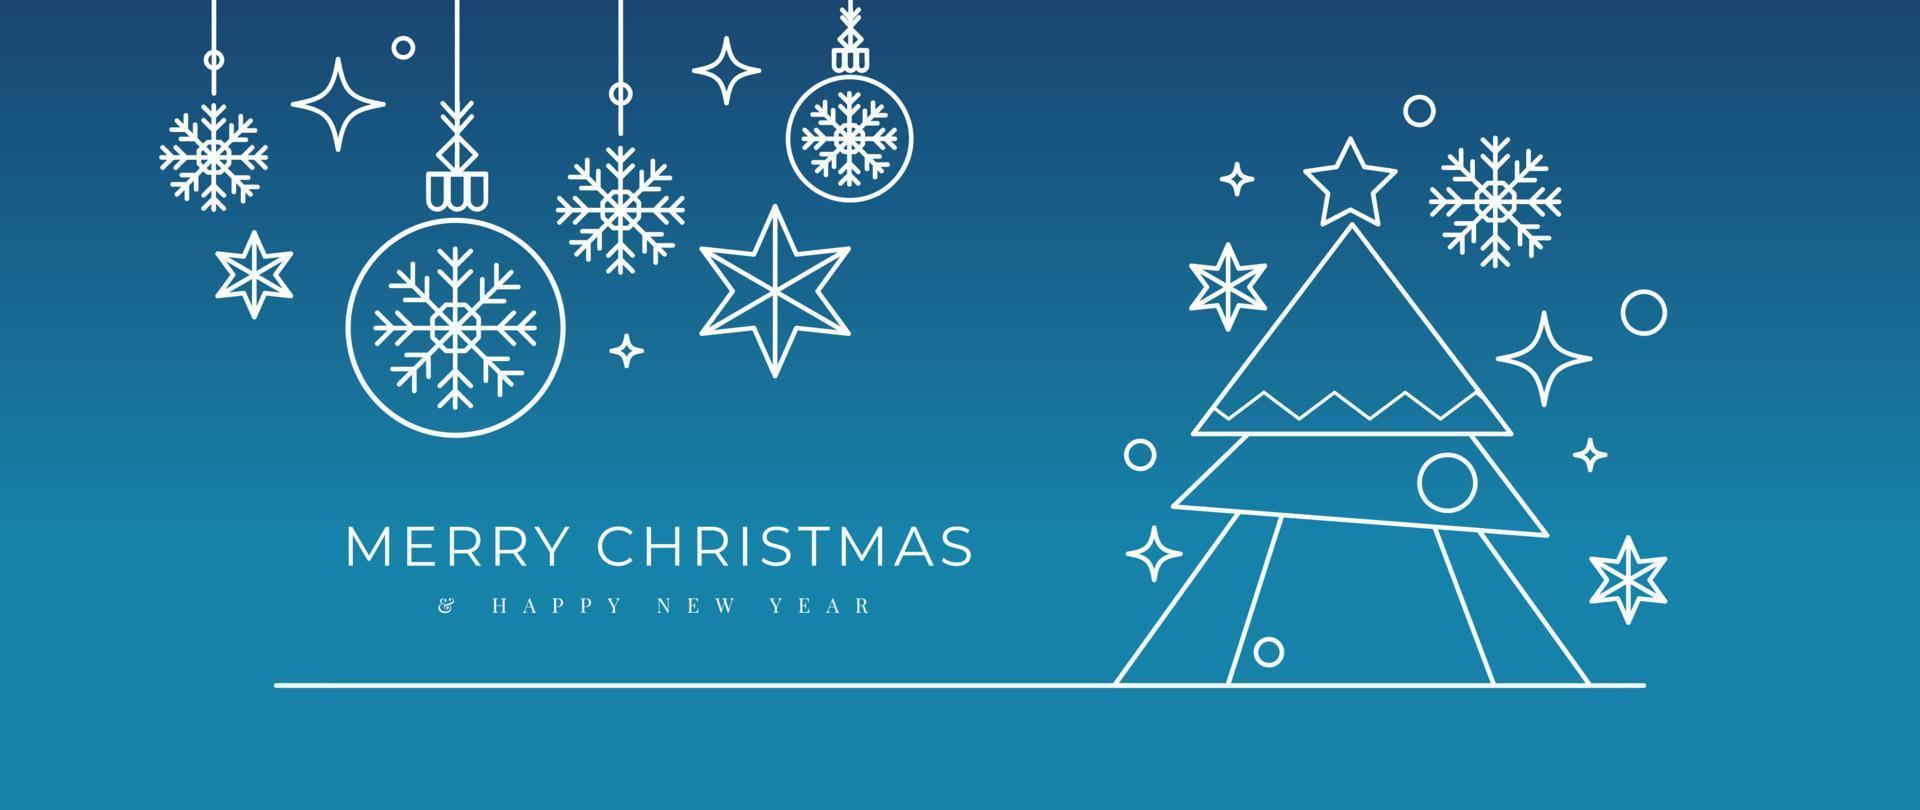 vector de fondo de concepto de navidad y feliz año nuevo. elementos decorativos blancos arte lineal del árbol de navidad, copo de nieve colgante, bola de adorno, brillo, estrella. diseño para papel tapiz, tarjeta, portada, afiche.